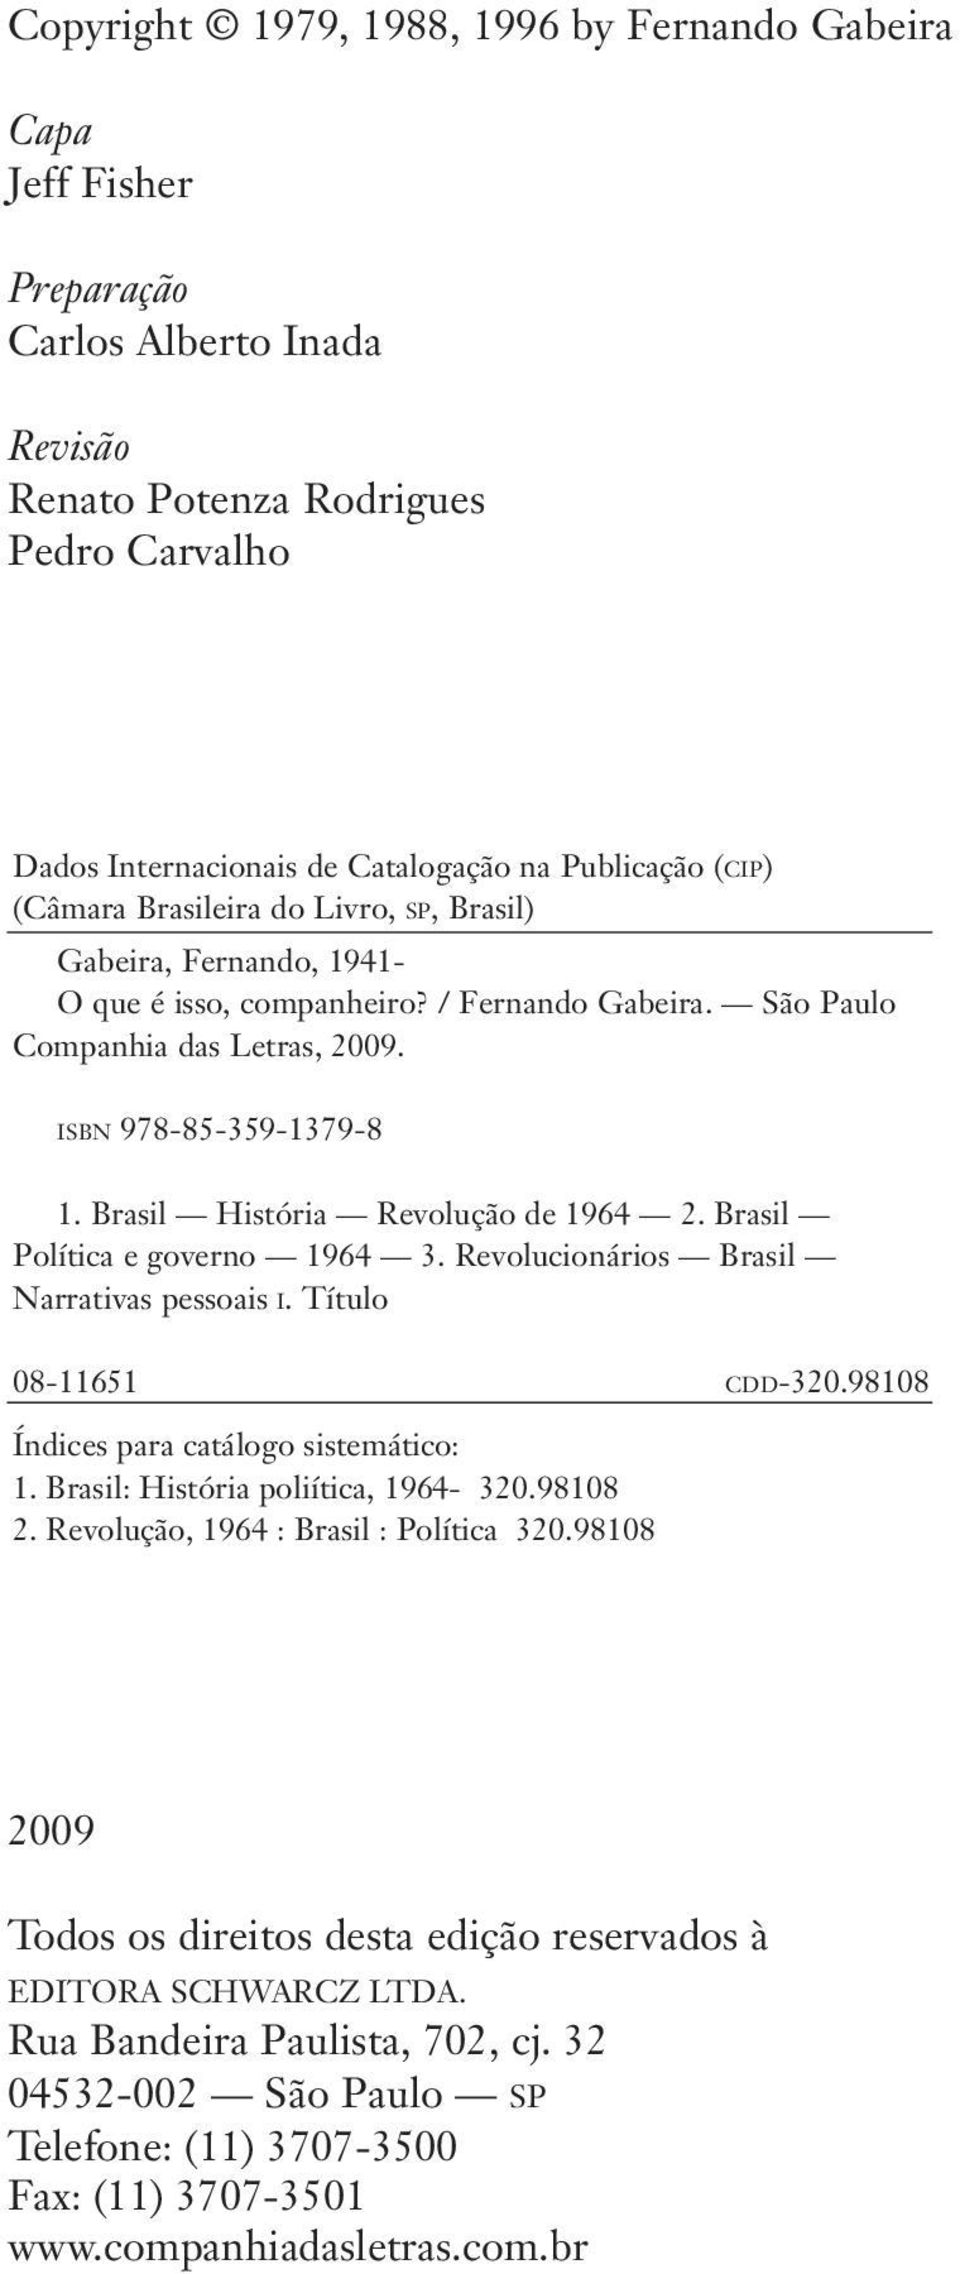 Brasil História Revolução de 1964 2. Brasil Política e governo 1964 3. Revolucionários Brasil Narrativas pessoais i. Título 08-11651 c d d-320.98108 Índices para catálogo sistemático: 1.